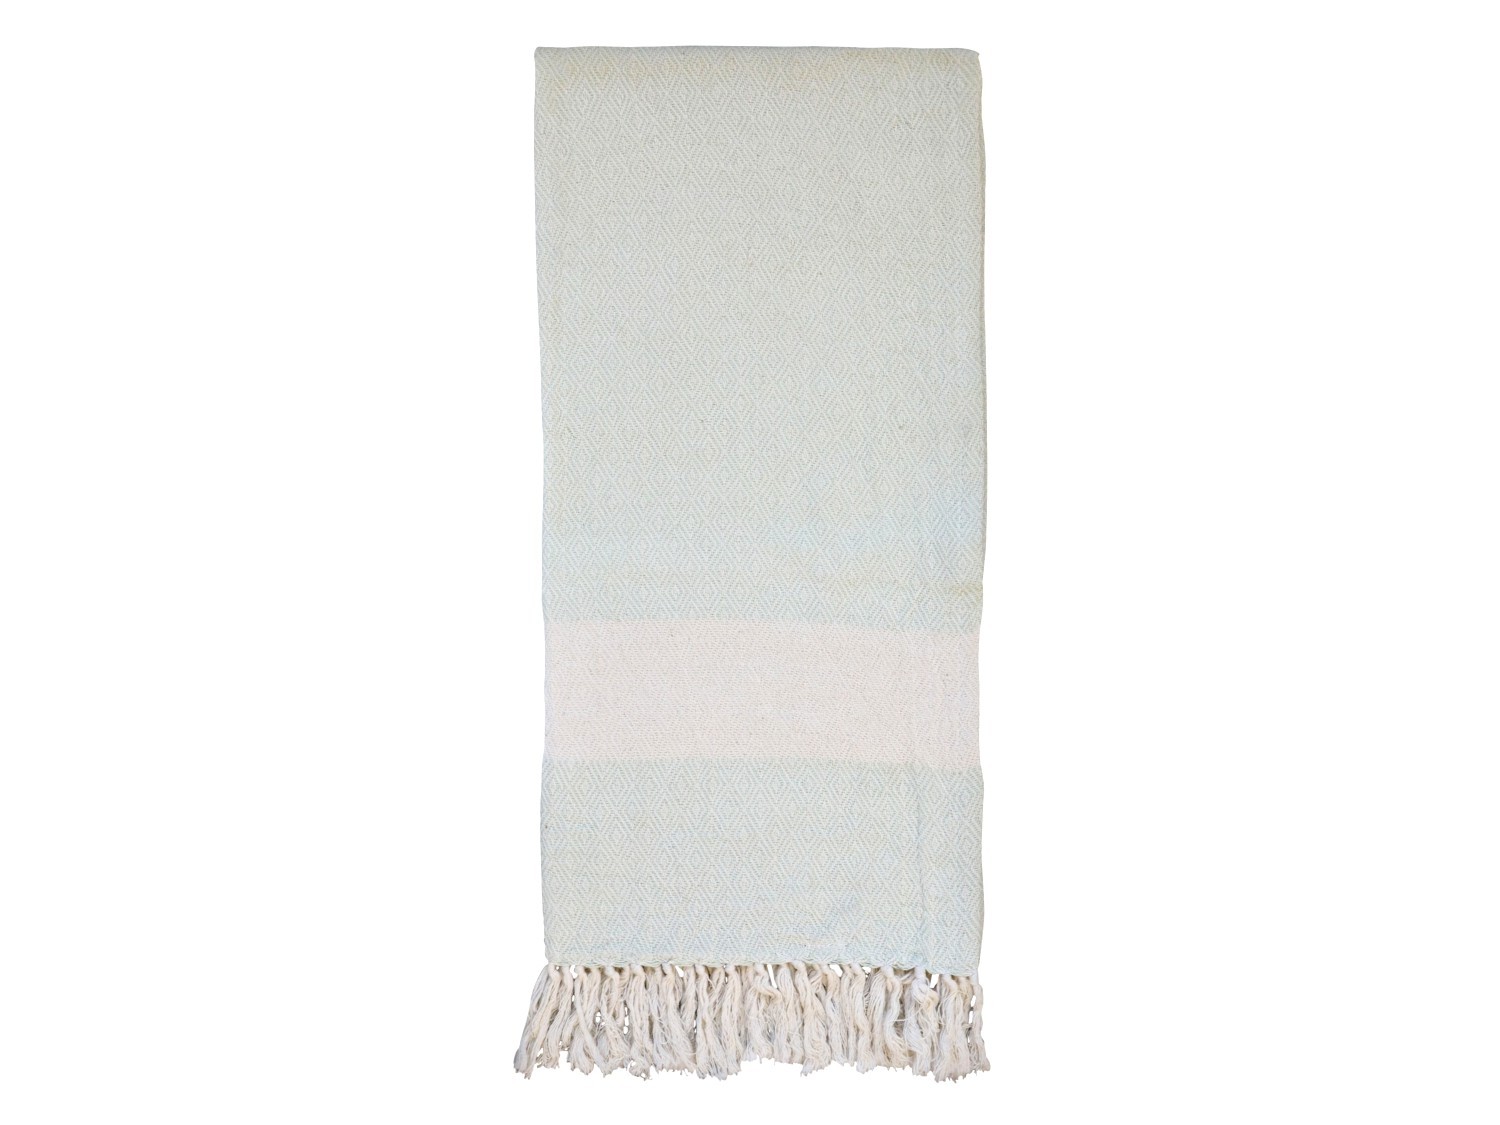 Pastelkově zelený slabounký bavlněný ručník / osuška s třásněmi Hammam - 90*180 cm Chic Antique